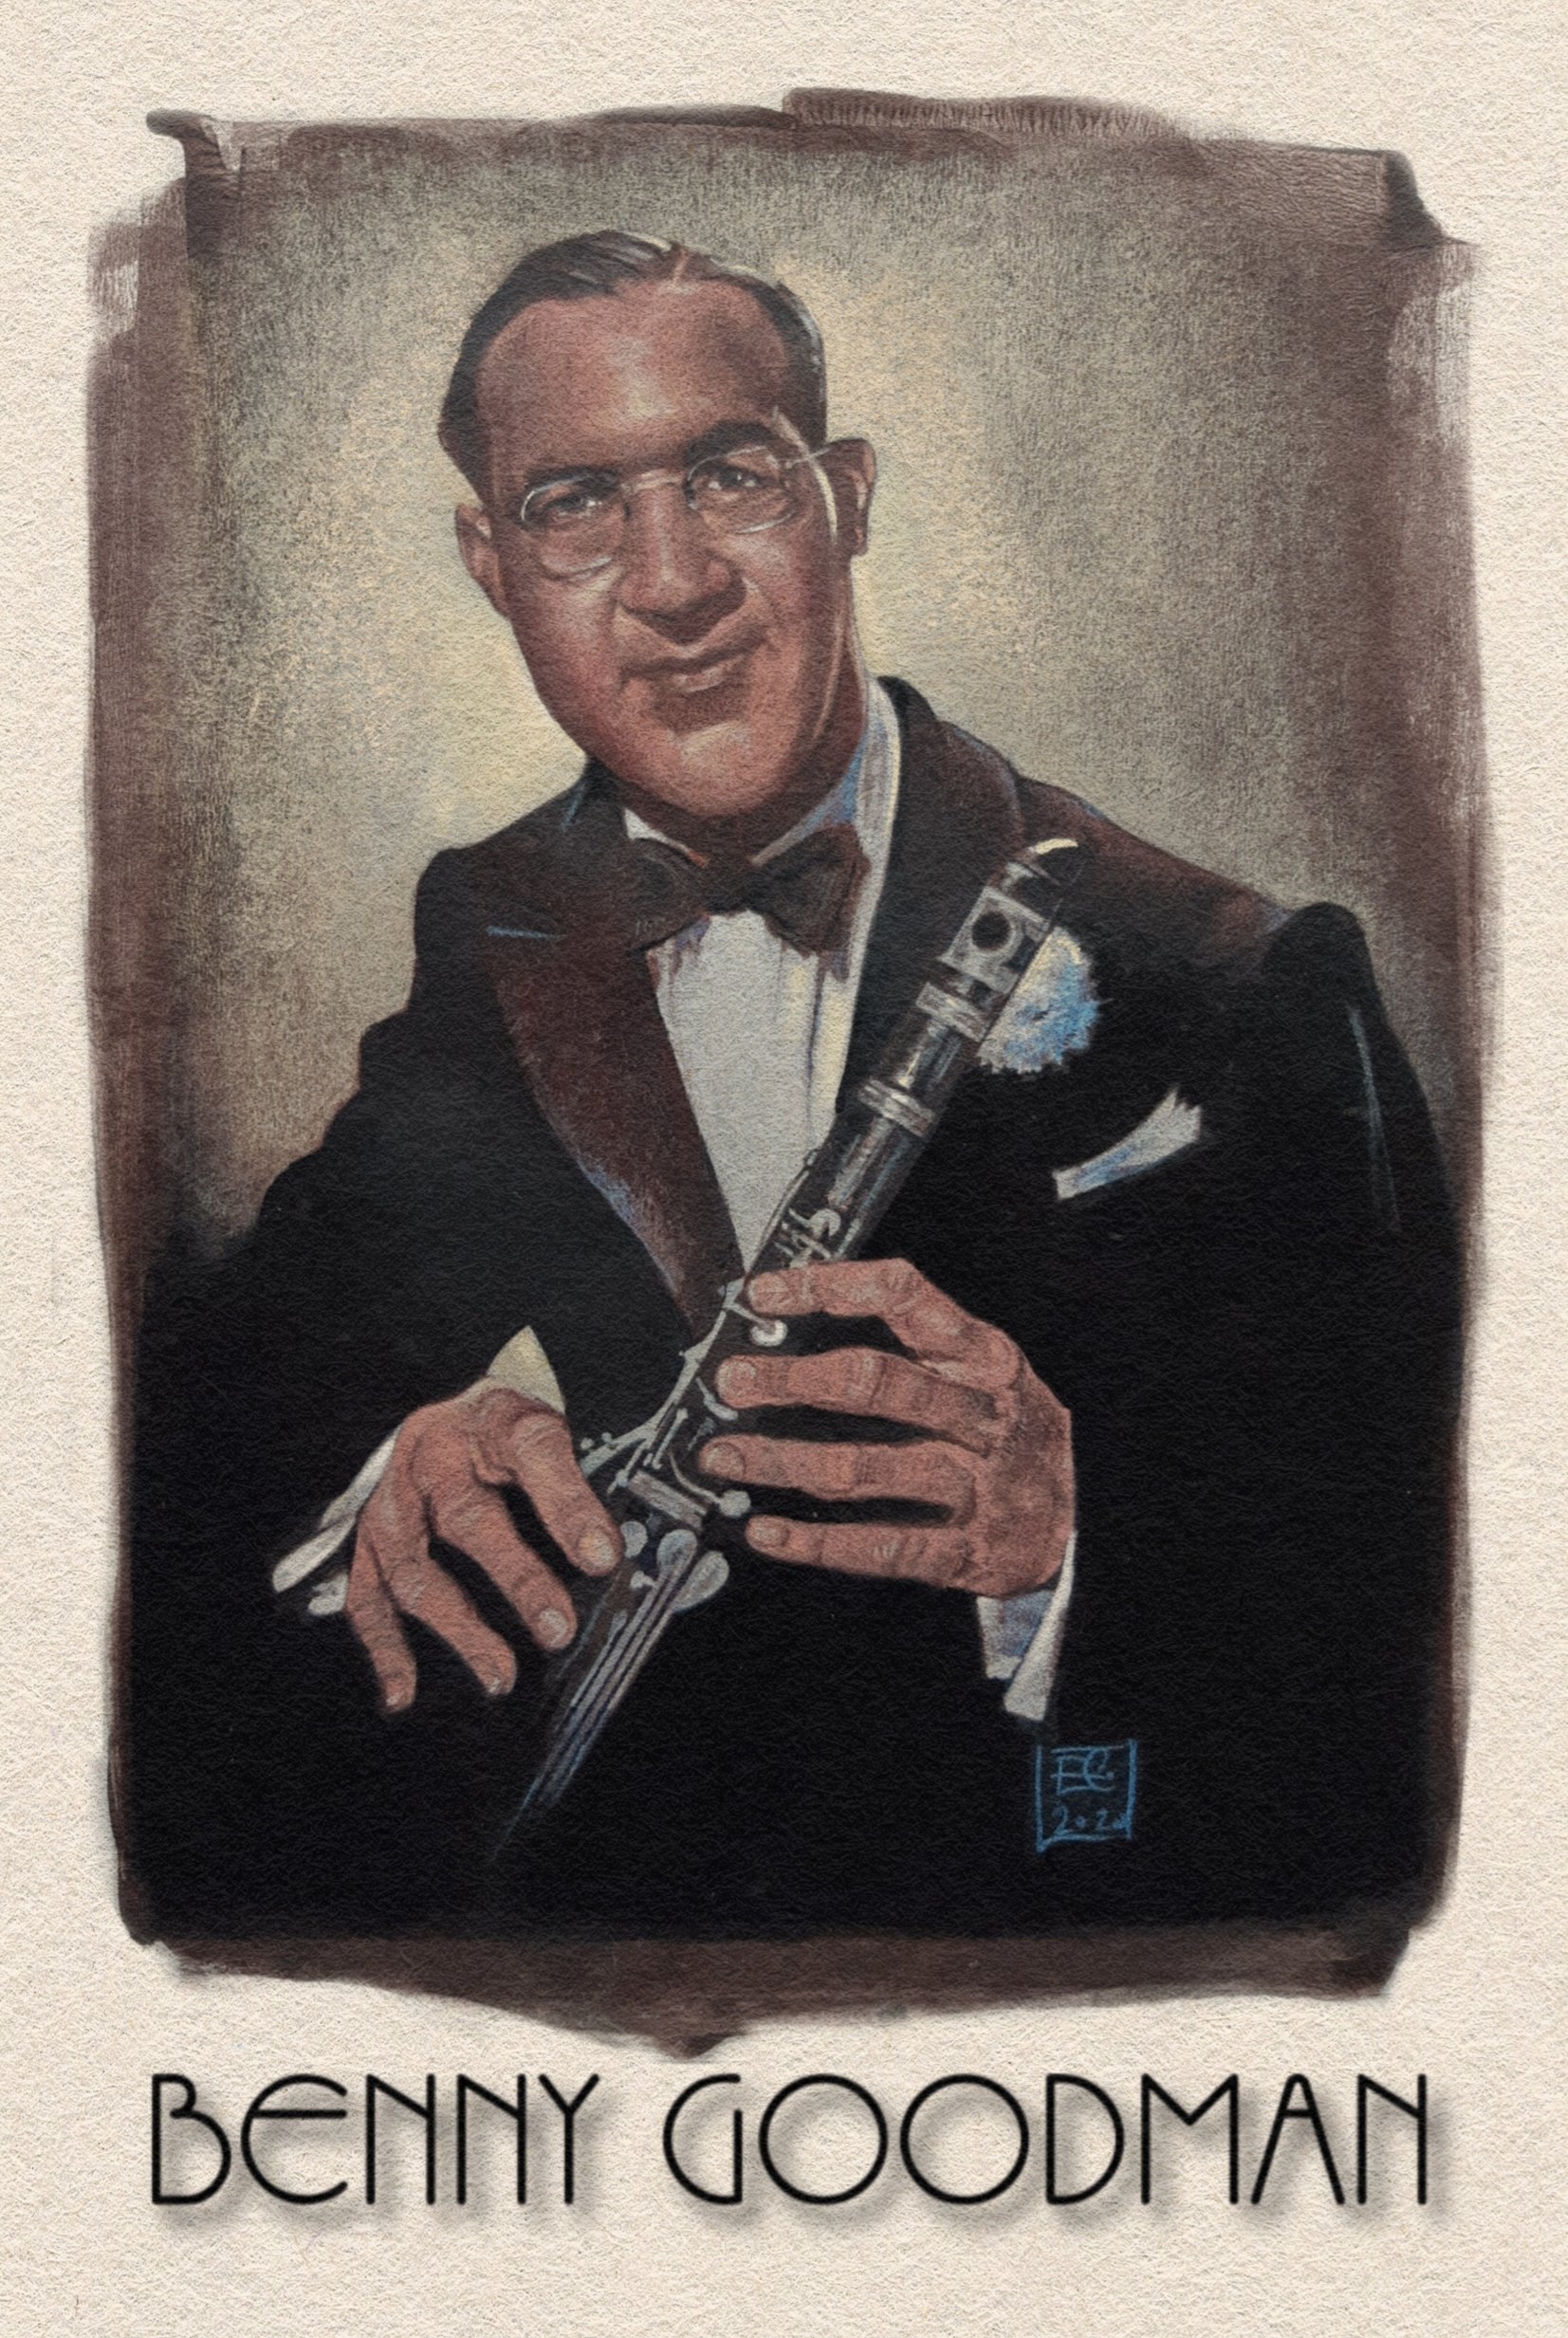 Benny Goodman - May 30, 1909